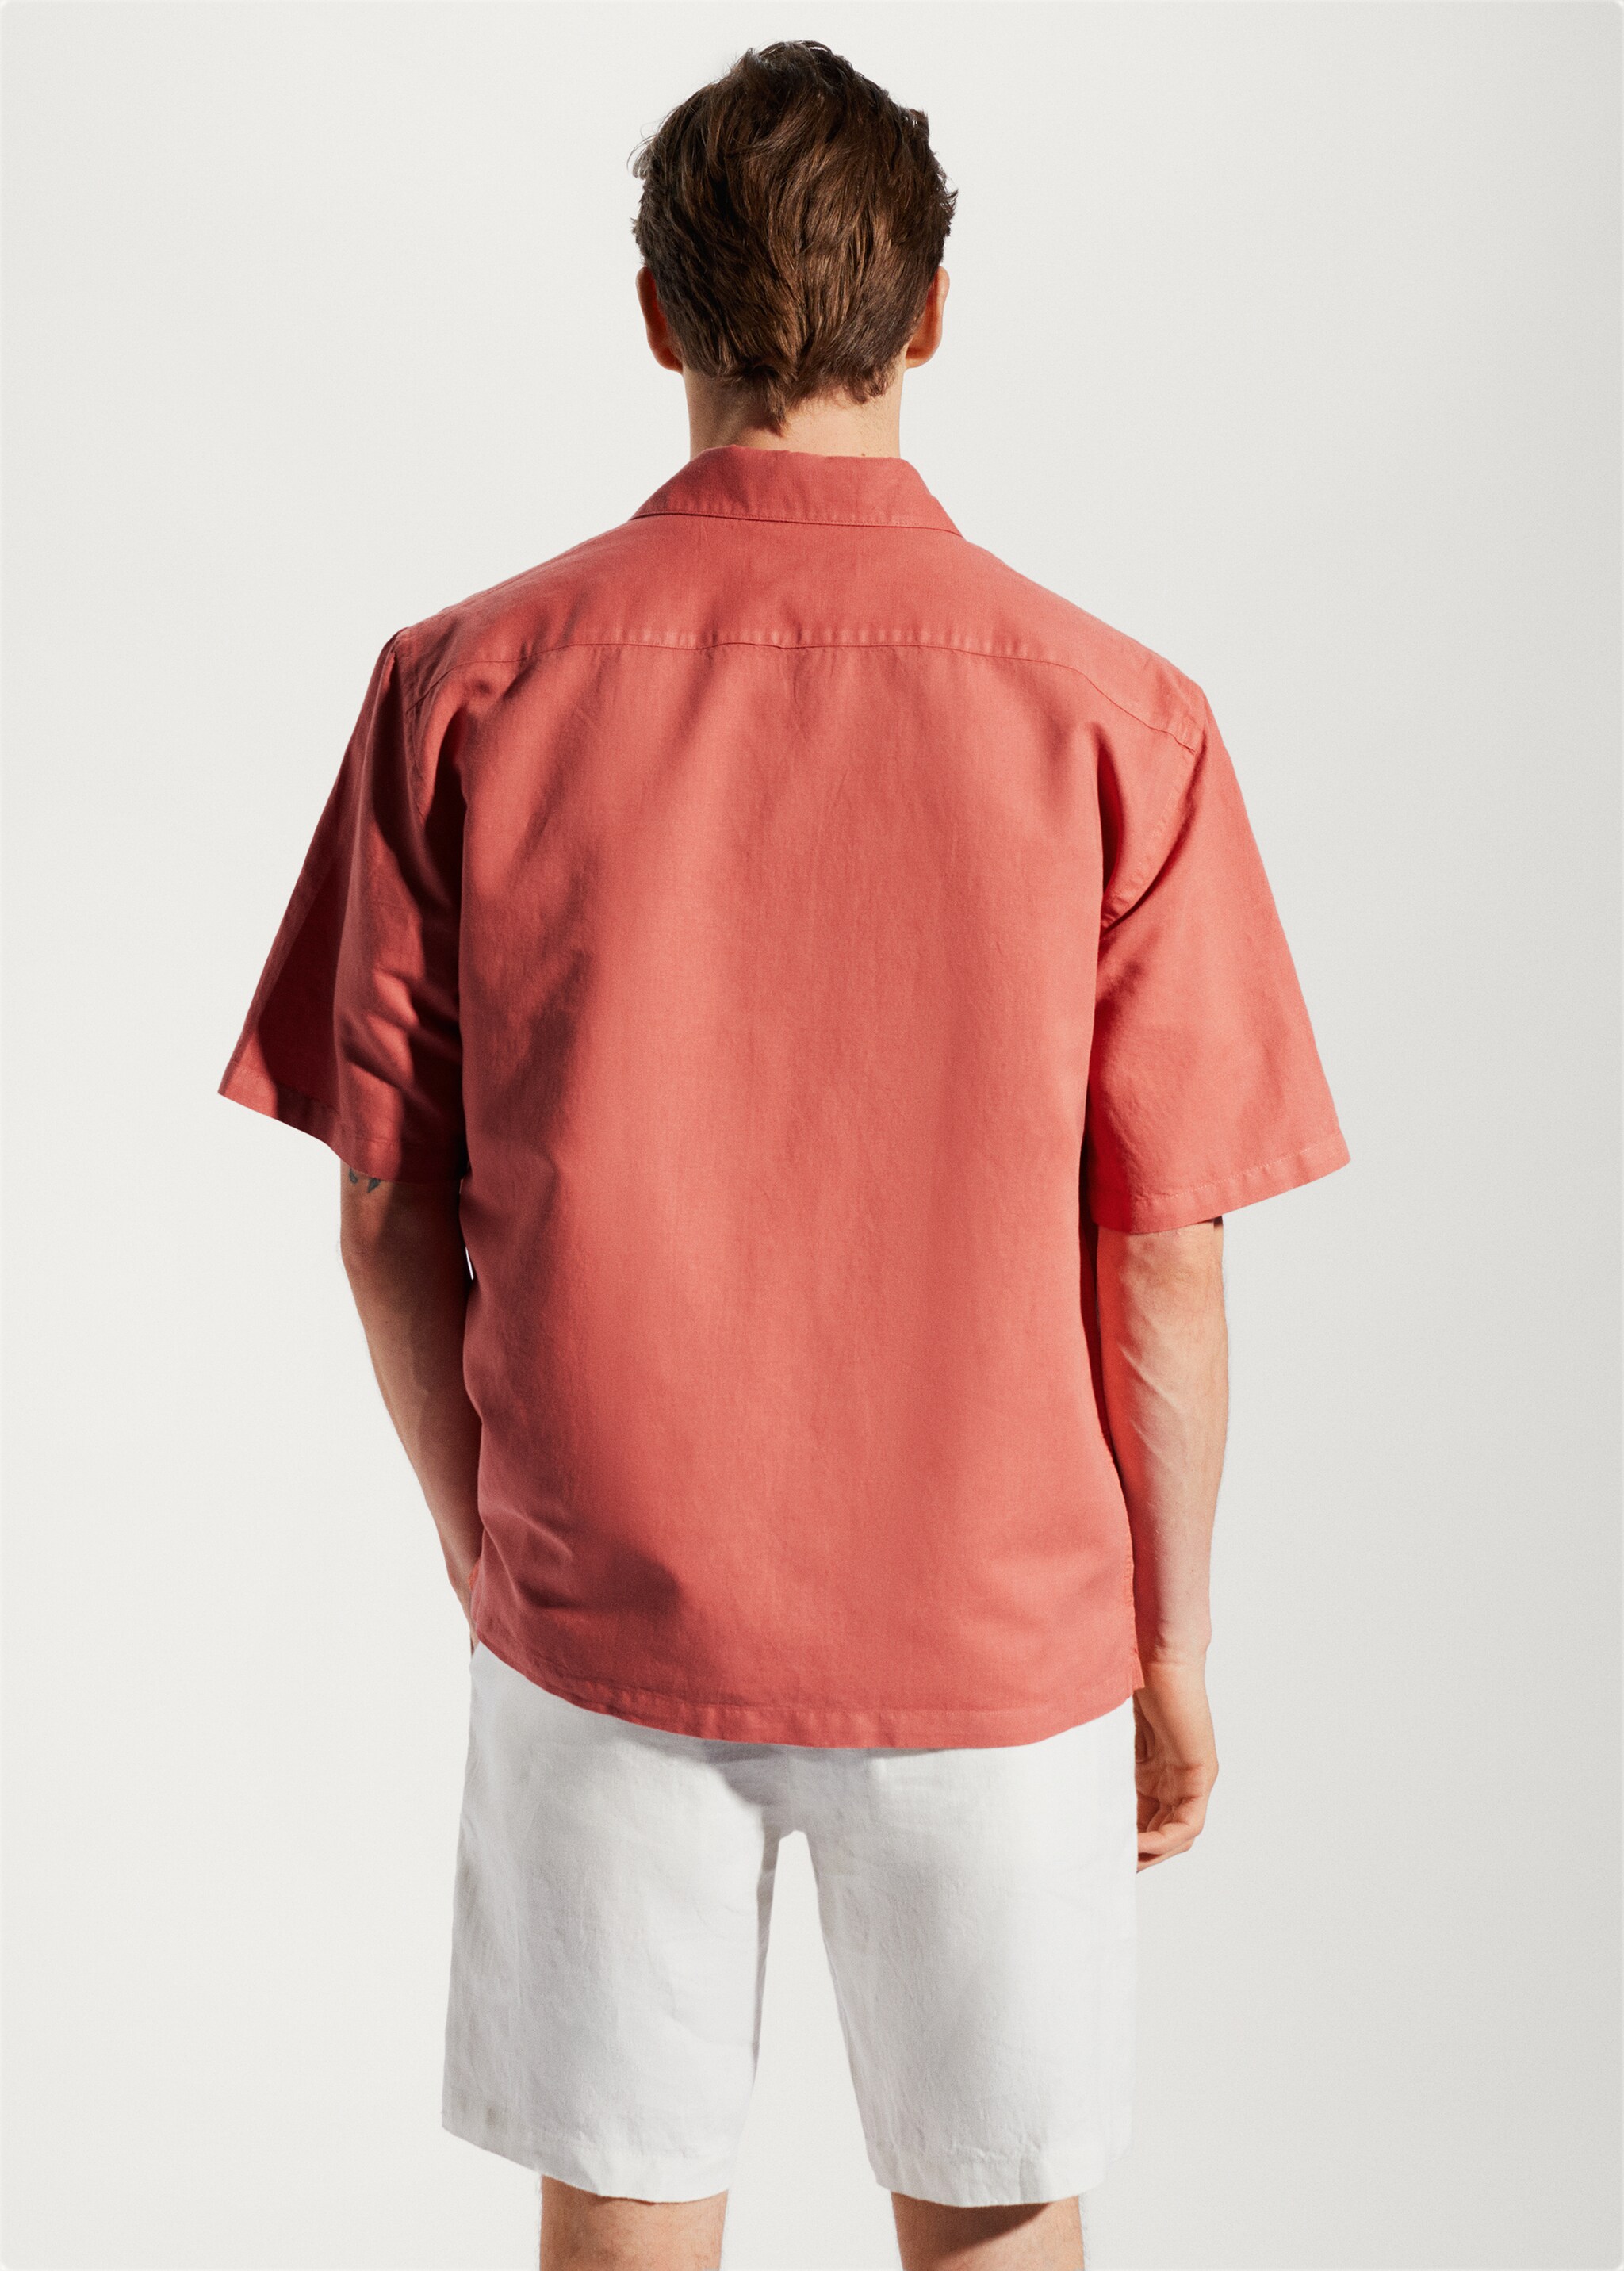 Baumwoll-Leinenhemd mit Bowling-Kragen - Rückseite des Artikels